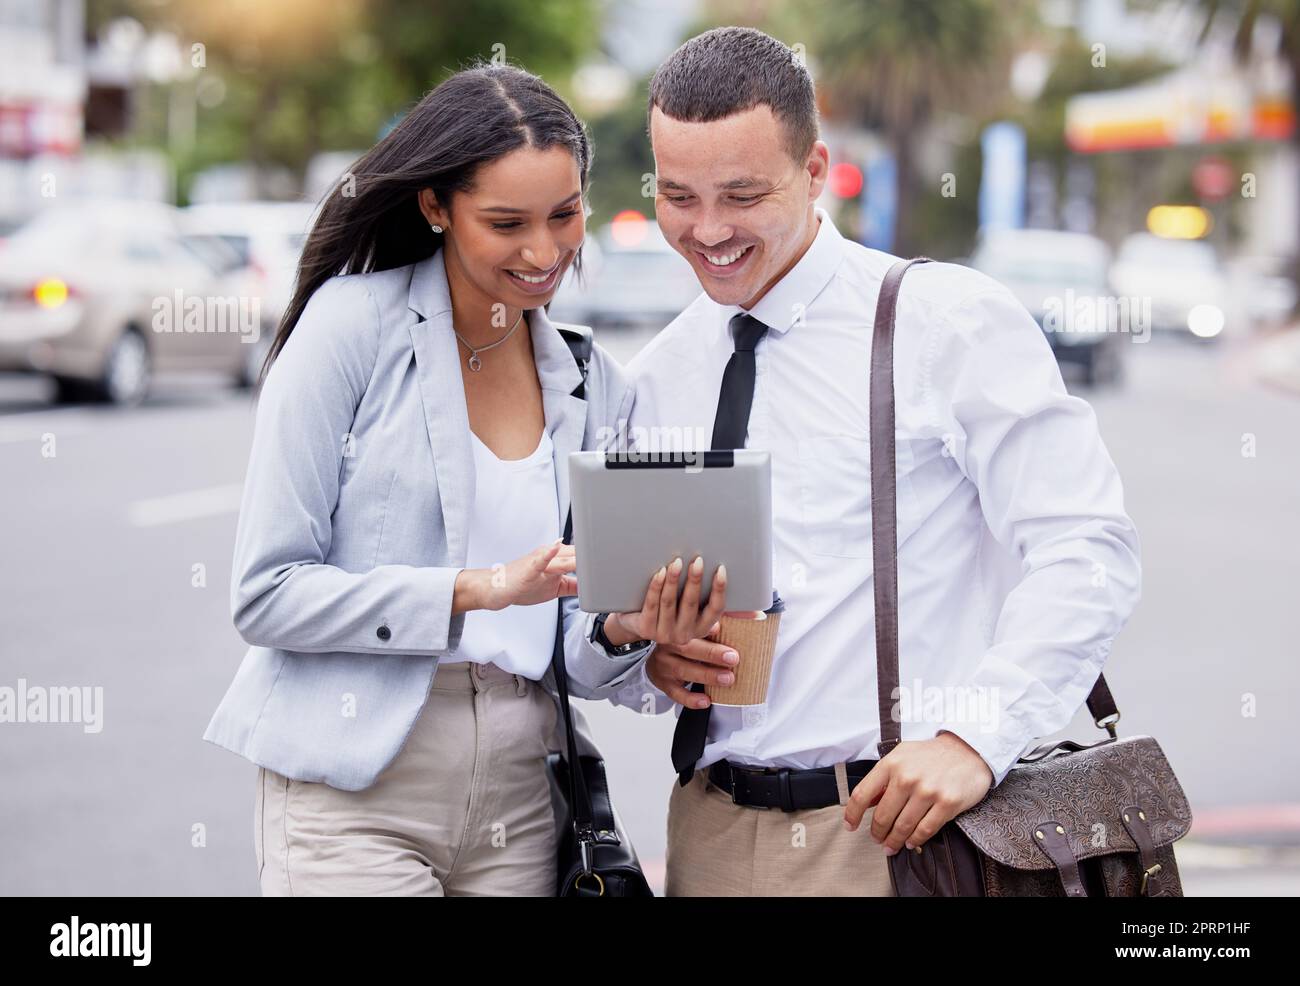 5G Tablet Internet und Social Media Live-Streaming eines Paares nach der Arbeit in einer Stadt. Glückliche Arbeitsfreunde oder Partner mit einem Lächeln, die sich Meme, Web oder Blog-Inhalte auf einer urbanen Straße ansehen Stockfoto